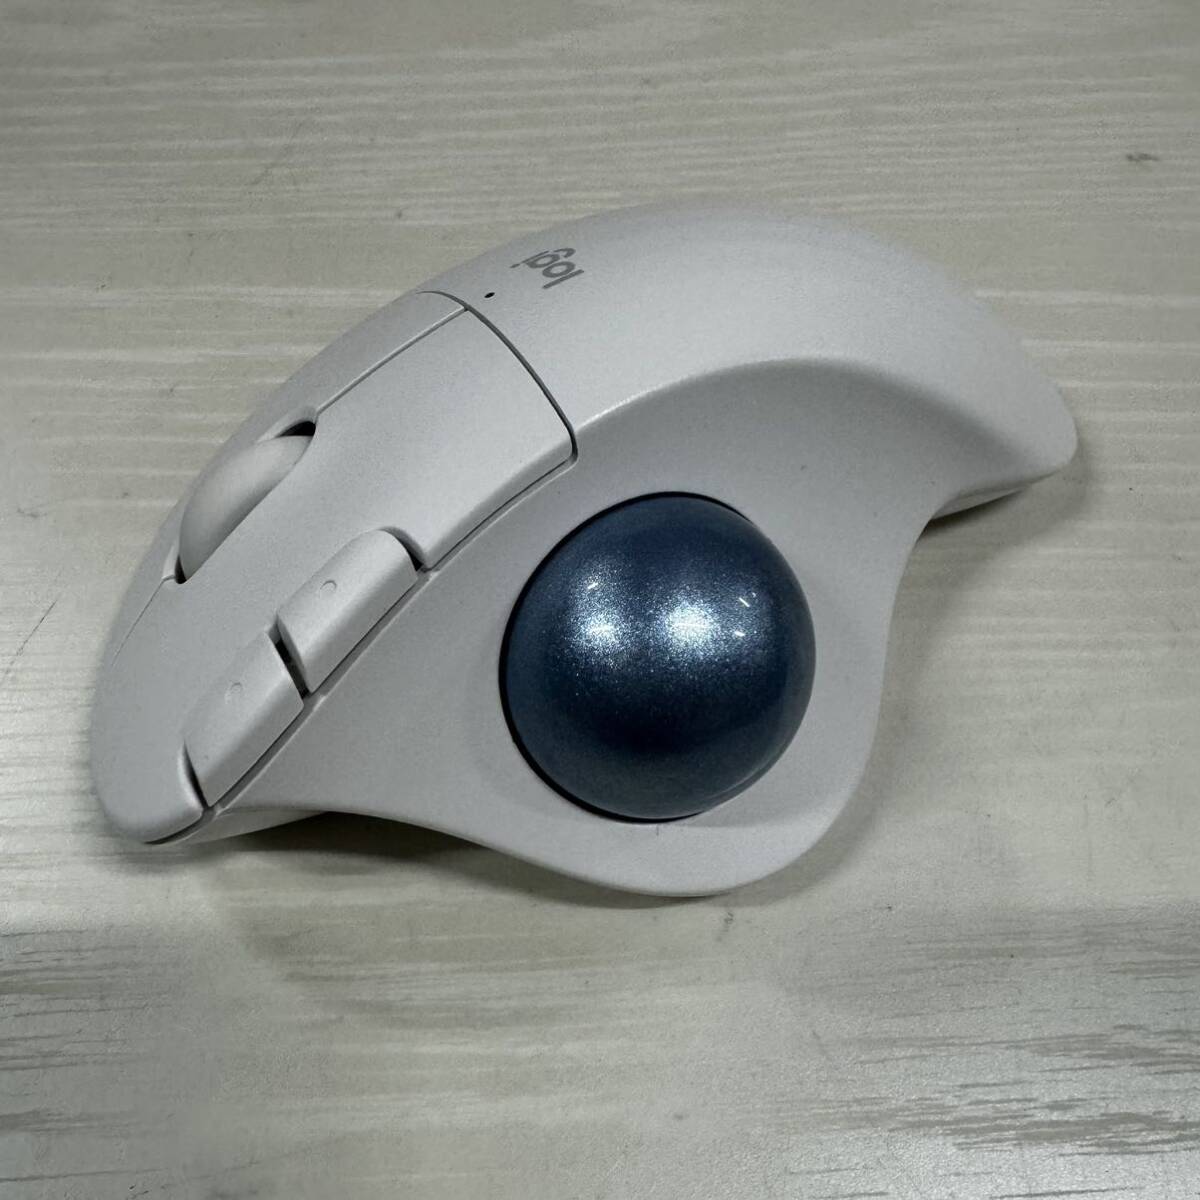 Logicool Logicool беспроводная мышь шаровой манипулятор беспроводной M575OW Bluetooth Unifying 5 кнопка "теплый" белый 